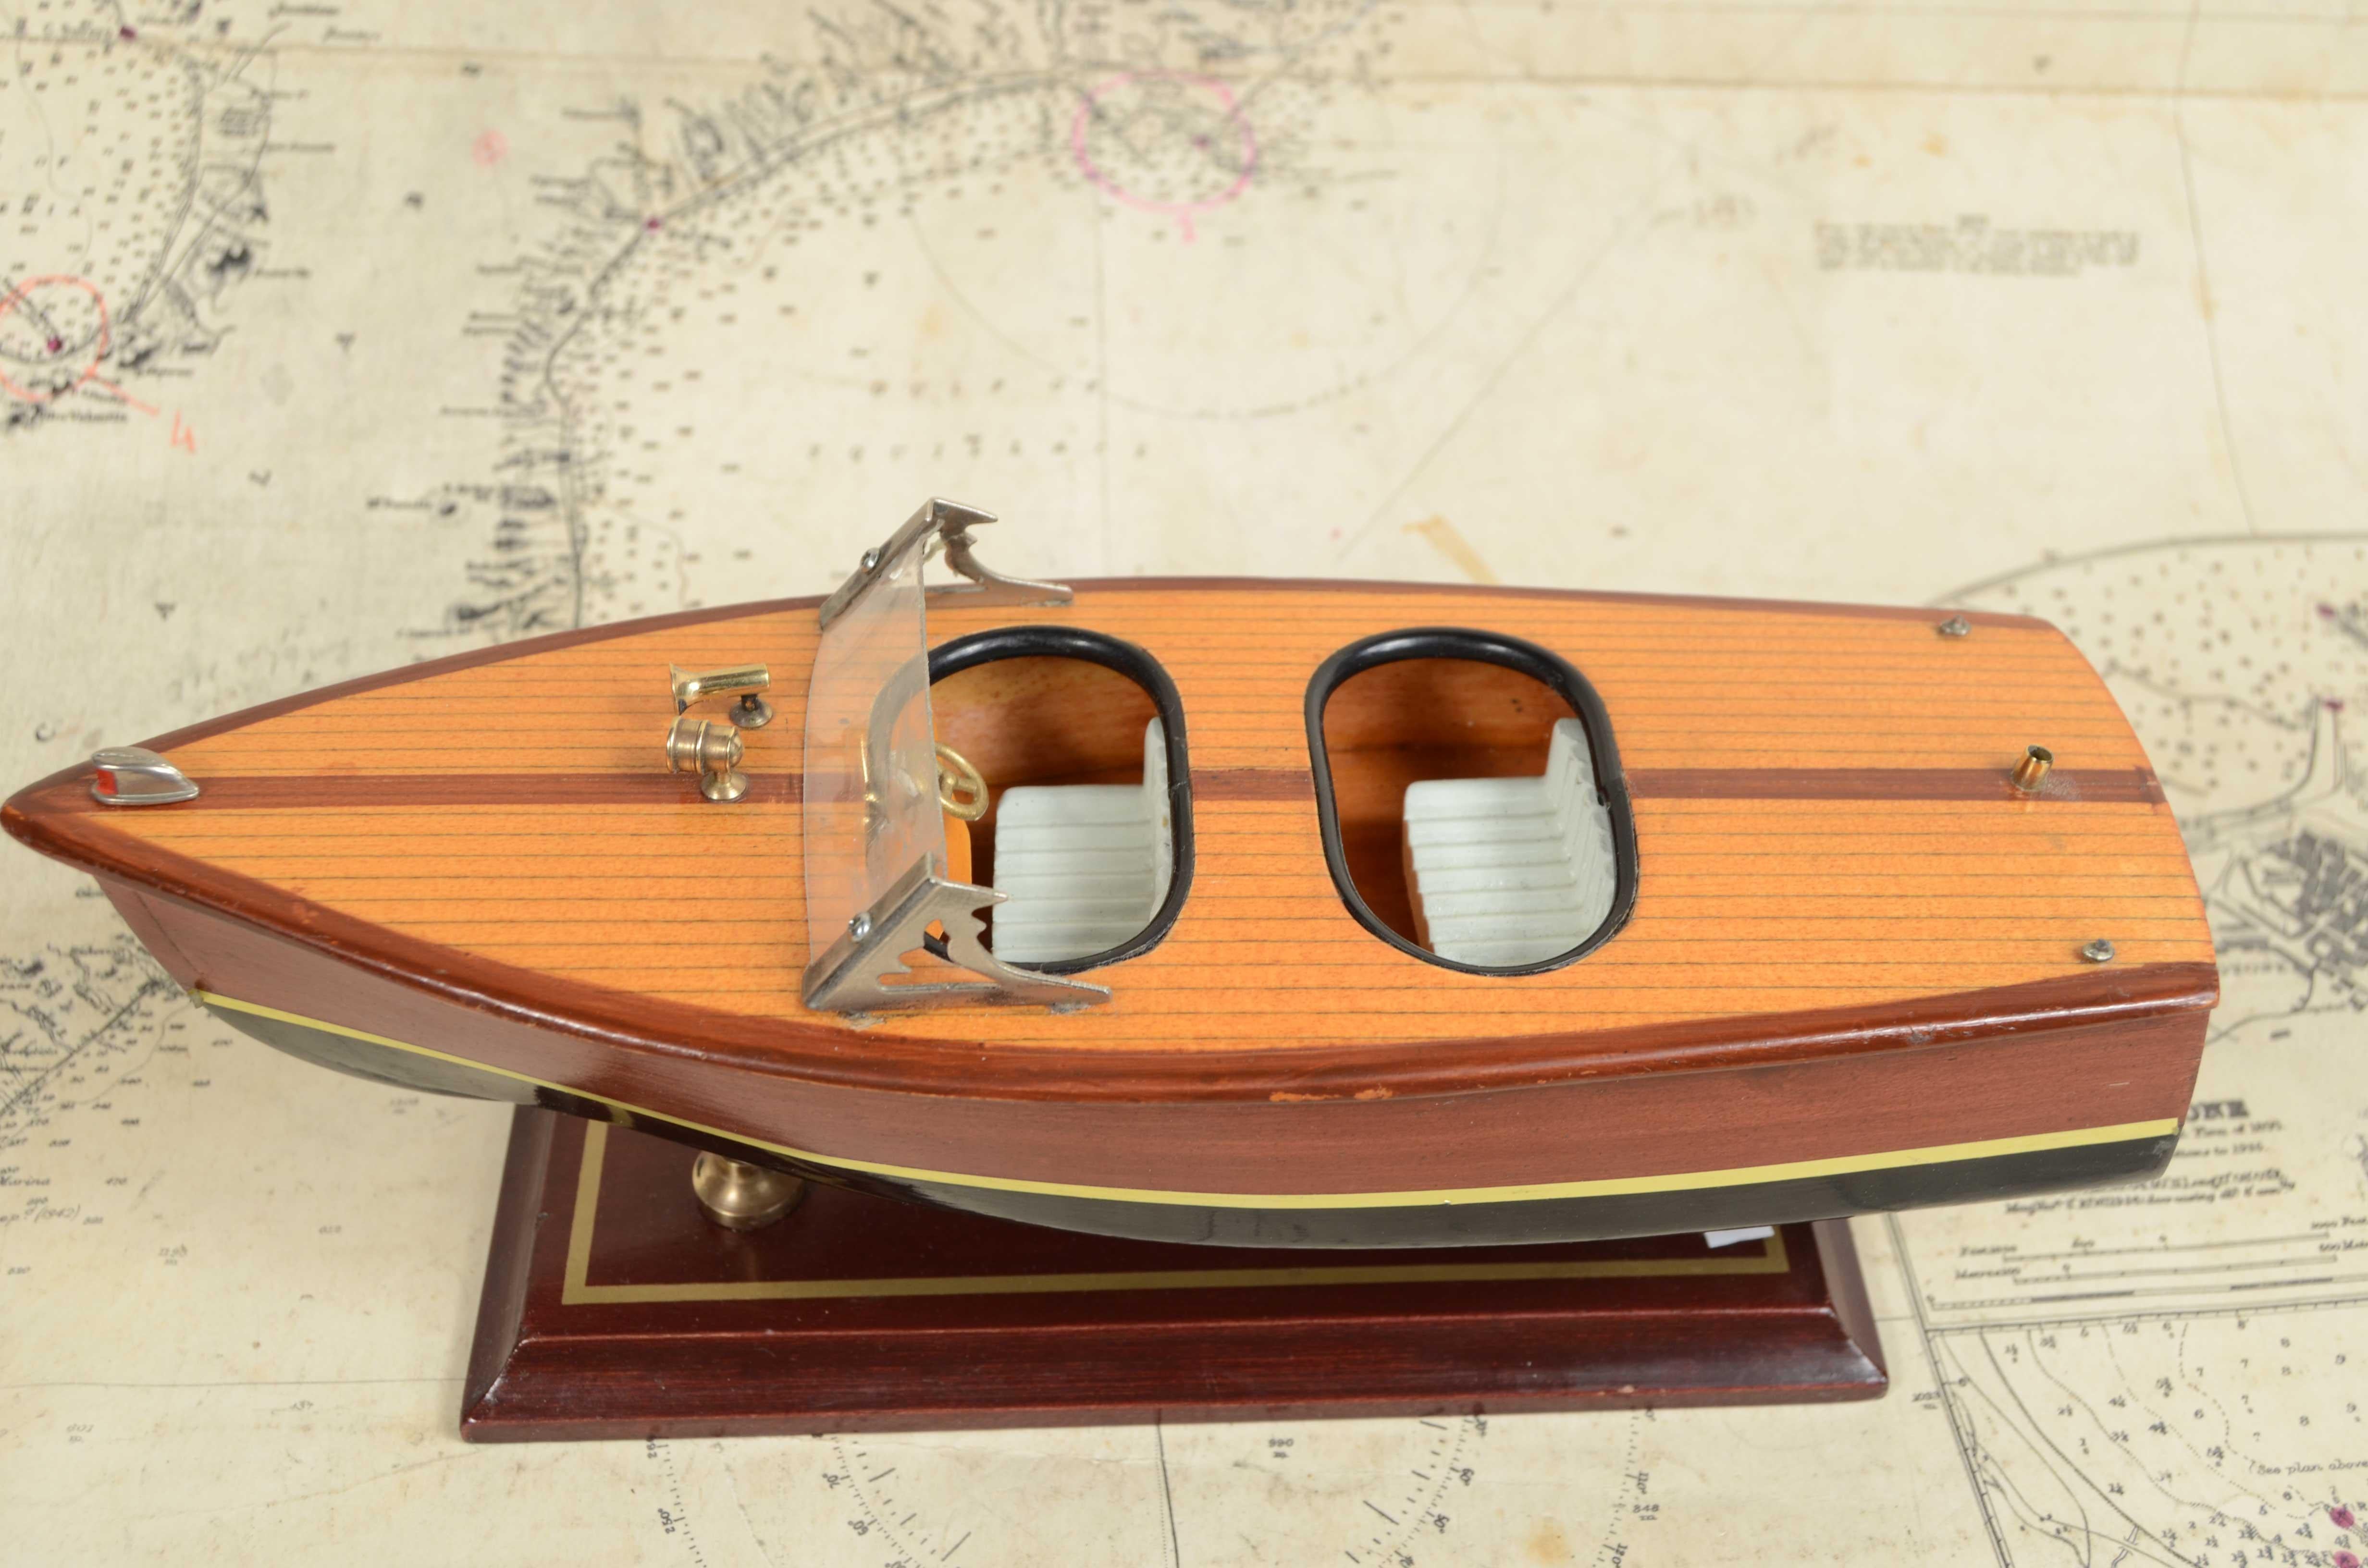 Maßstabsgetreues Modell eines italienischen Motorboots  1950er Jahre, hölzerner beplankter Rumpf, montiert auf einem Sockel aus Holz und Messing. 
Länge 25 cm - Zoll 9,8, Breite 8,8 cm - Zoll 3,4, Höhe mit Sockel 8,5 cm - Zoll 3,4. Guter Zustand.